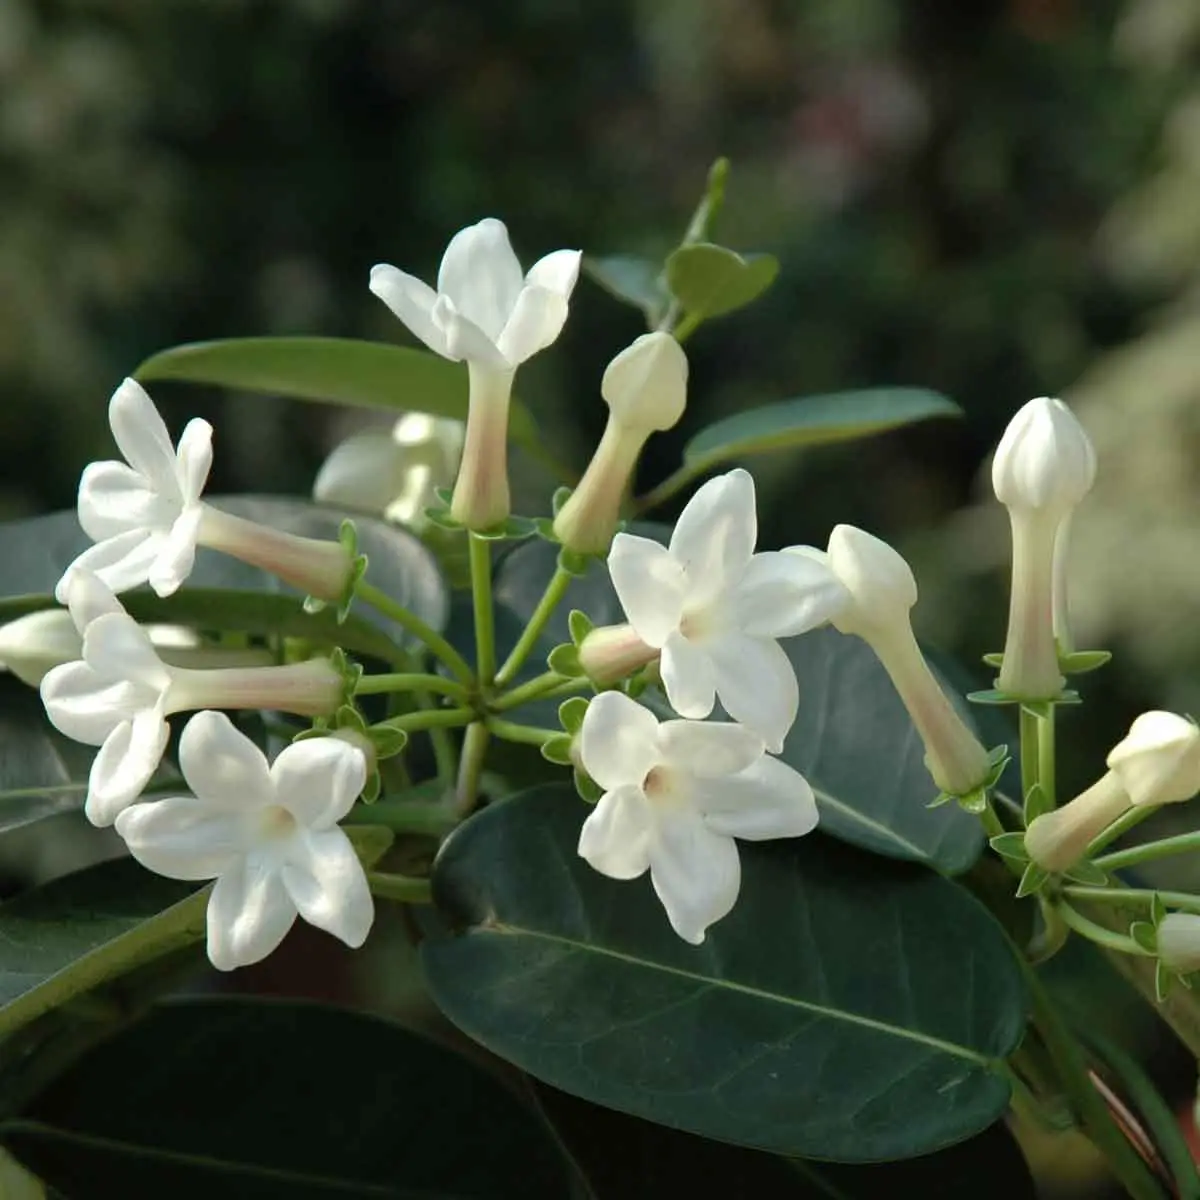 Pianta rampicante con fiori bianchi profumati